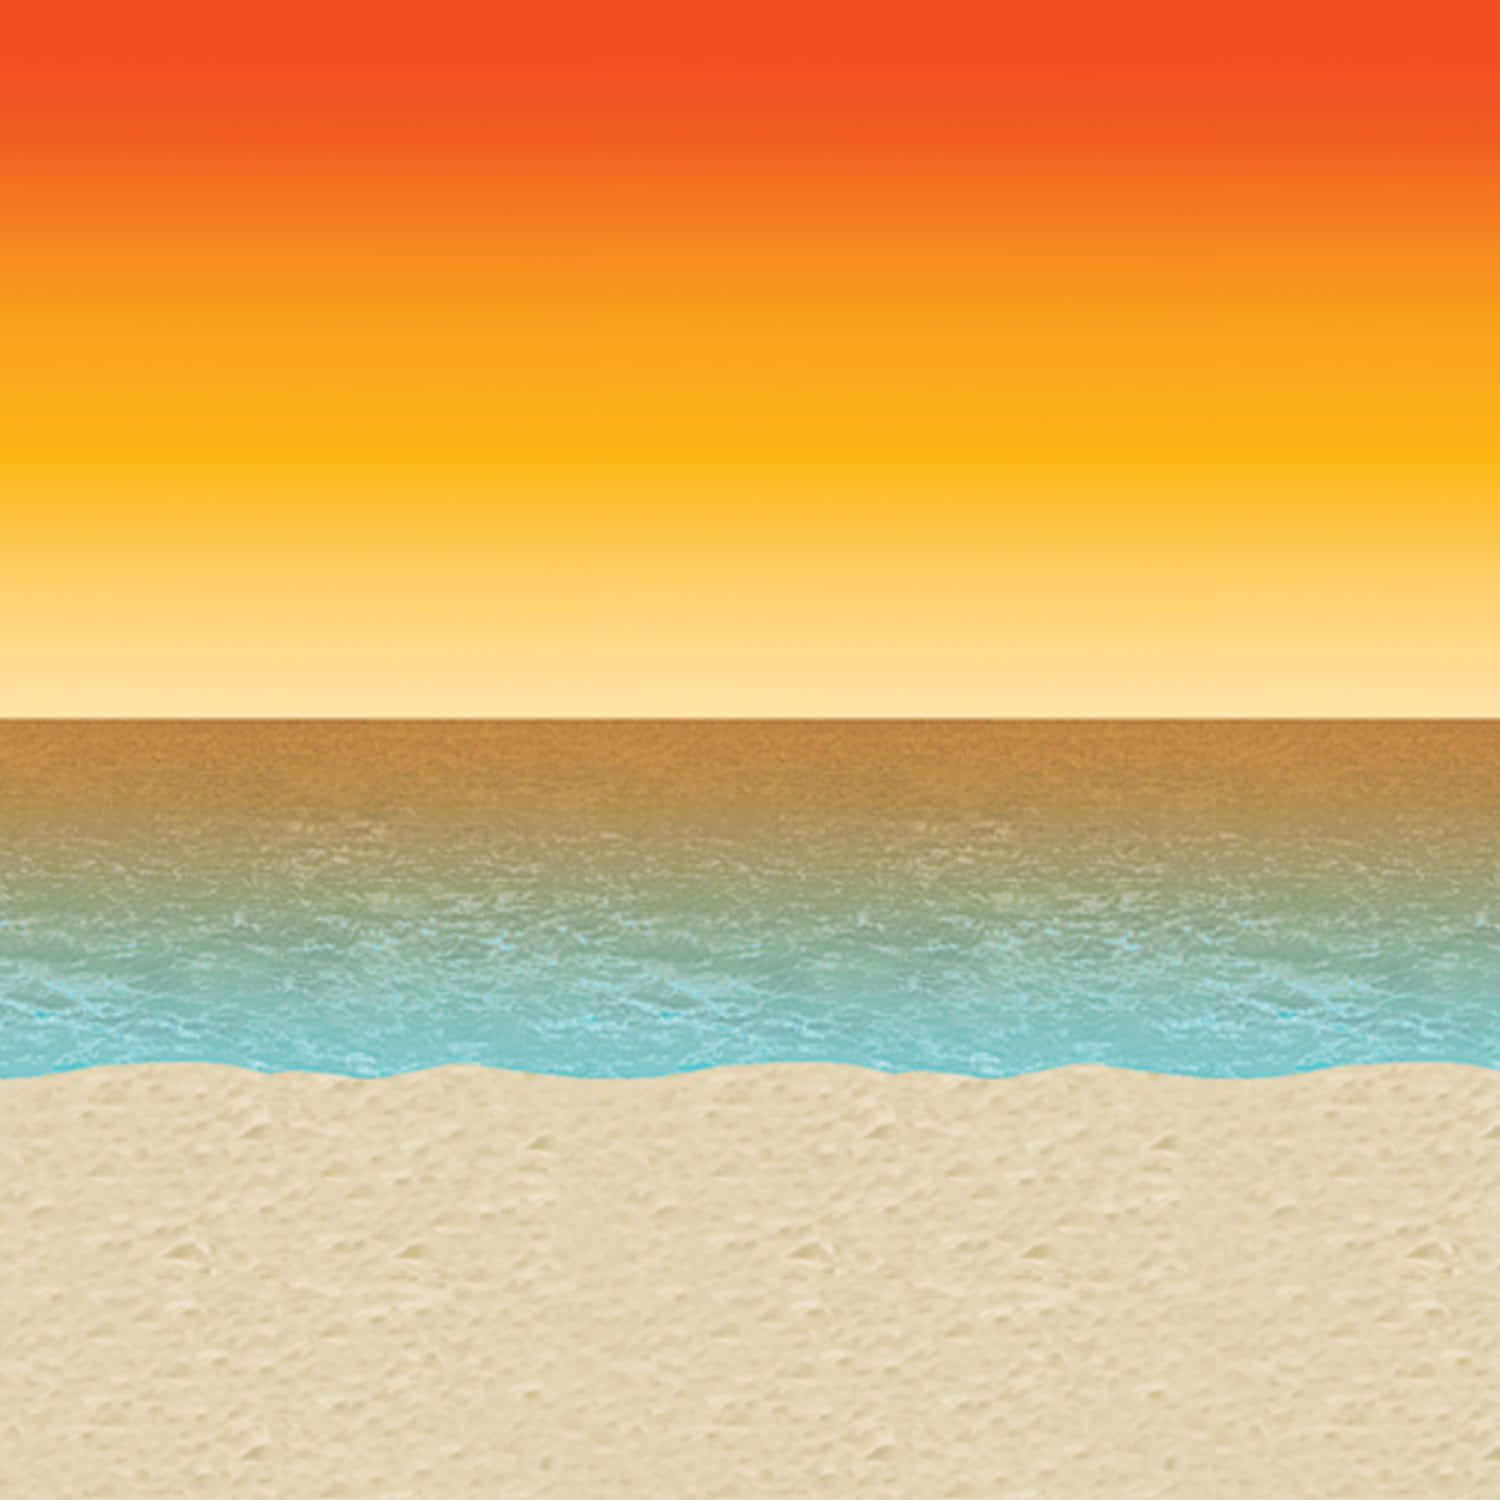 A Beach Scene With A Sunset